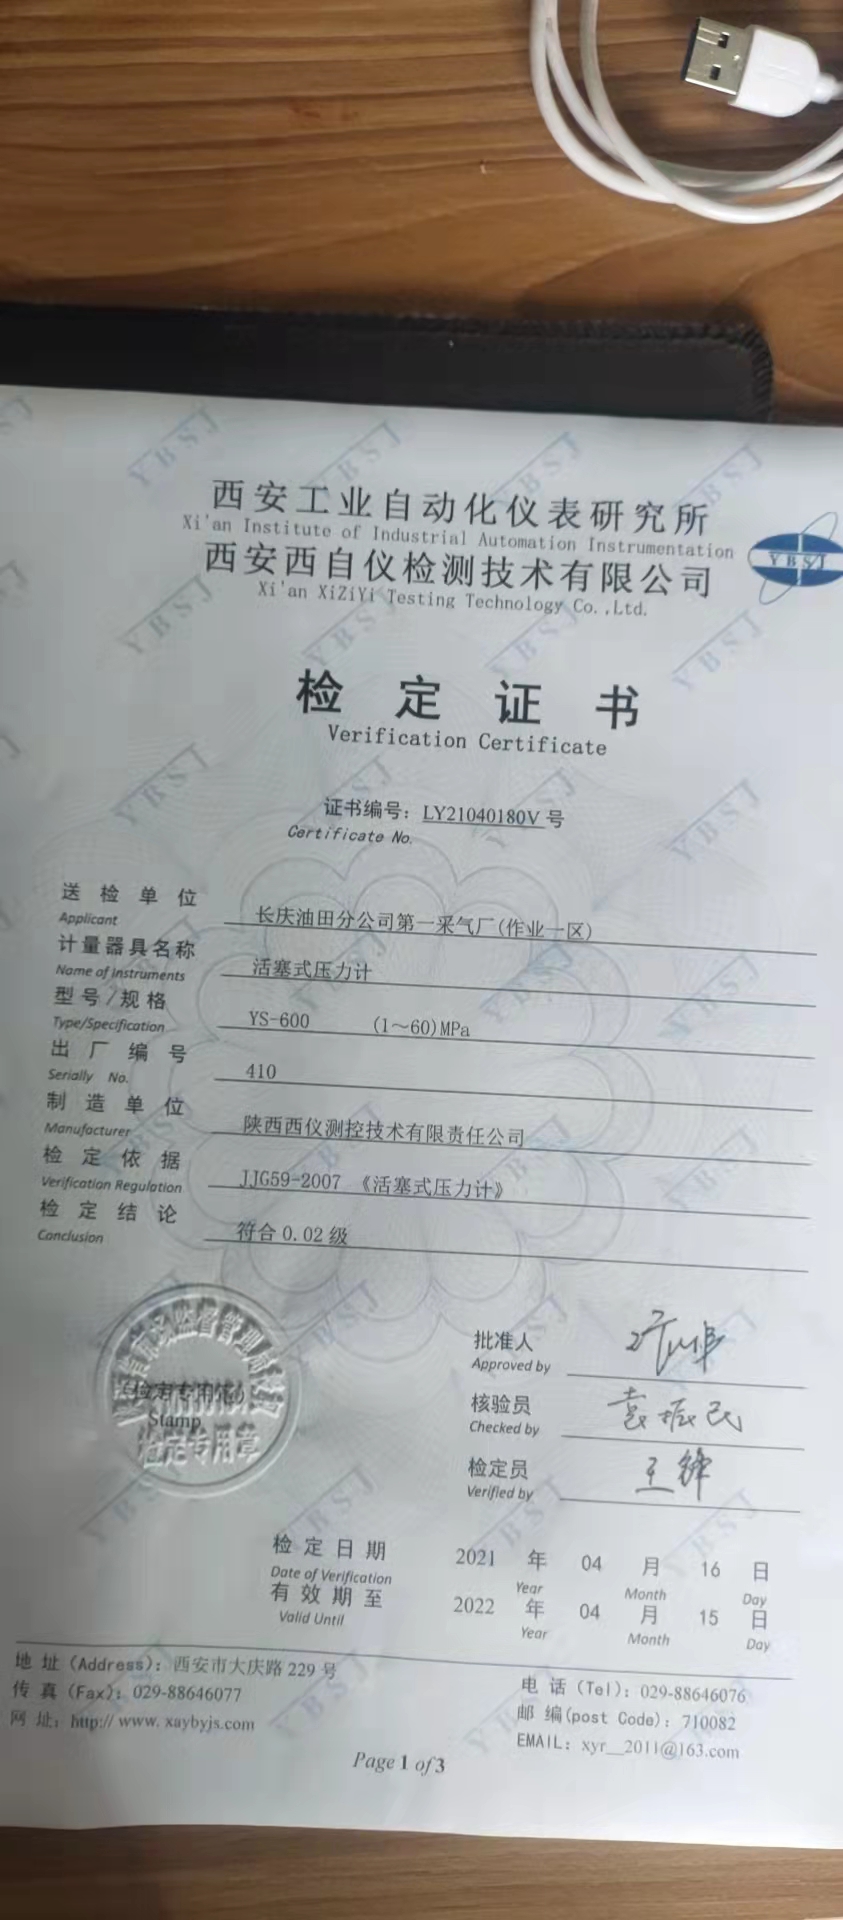 西仪测控客户长庆油田第一采气厂活塞式压力计计量证书1-60Mpa 410号计量证书